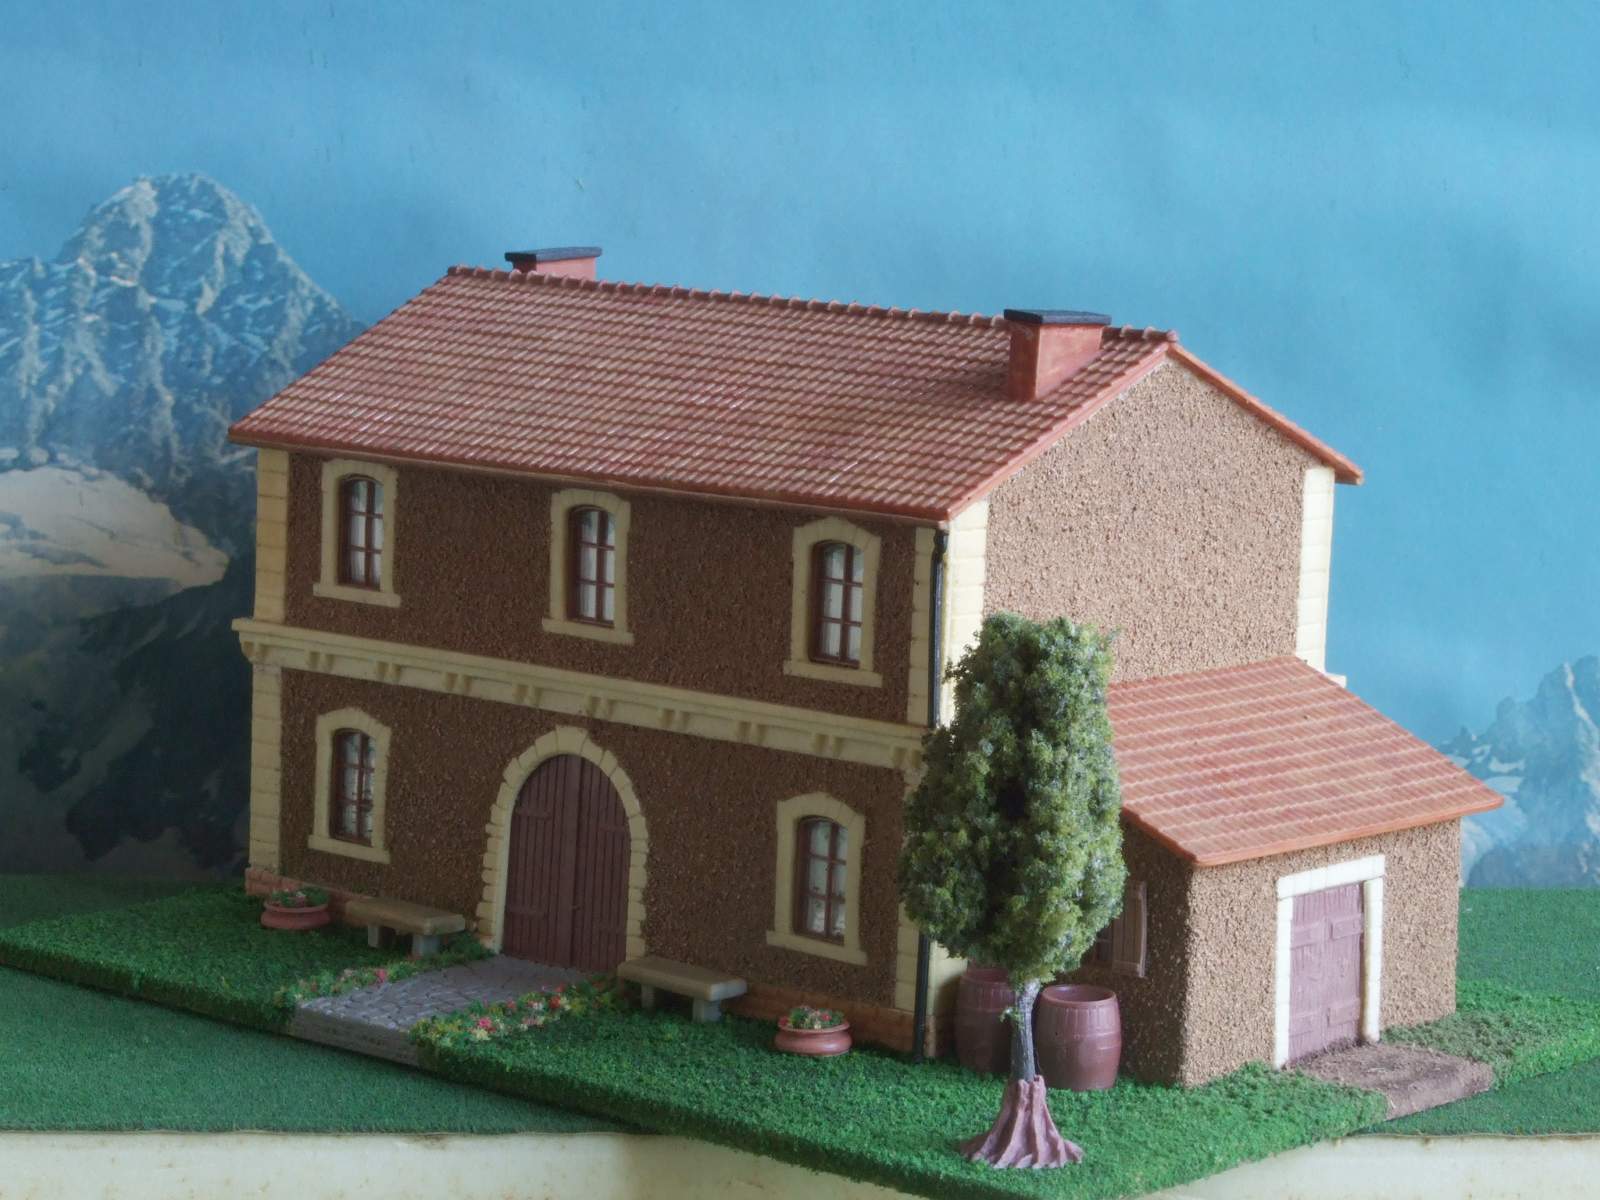 Casa di campagna - Edificio stile Italiano per modellismo scala HO - 1:87 Krea